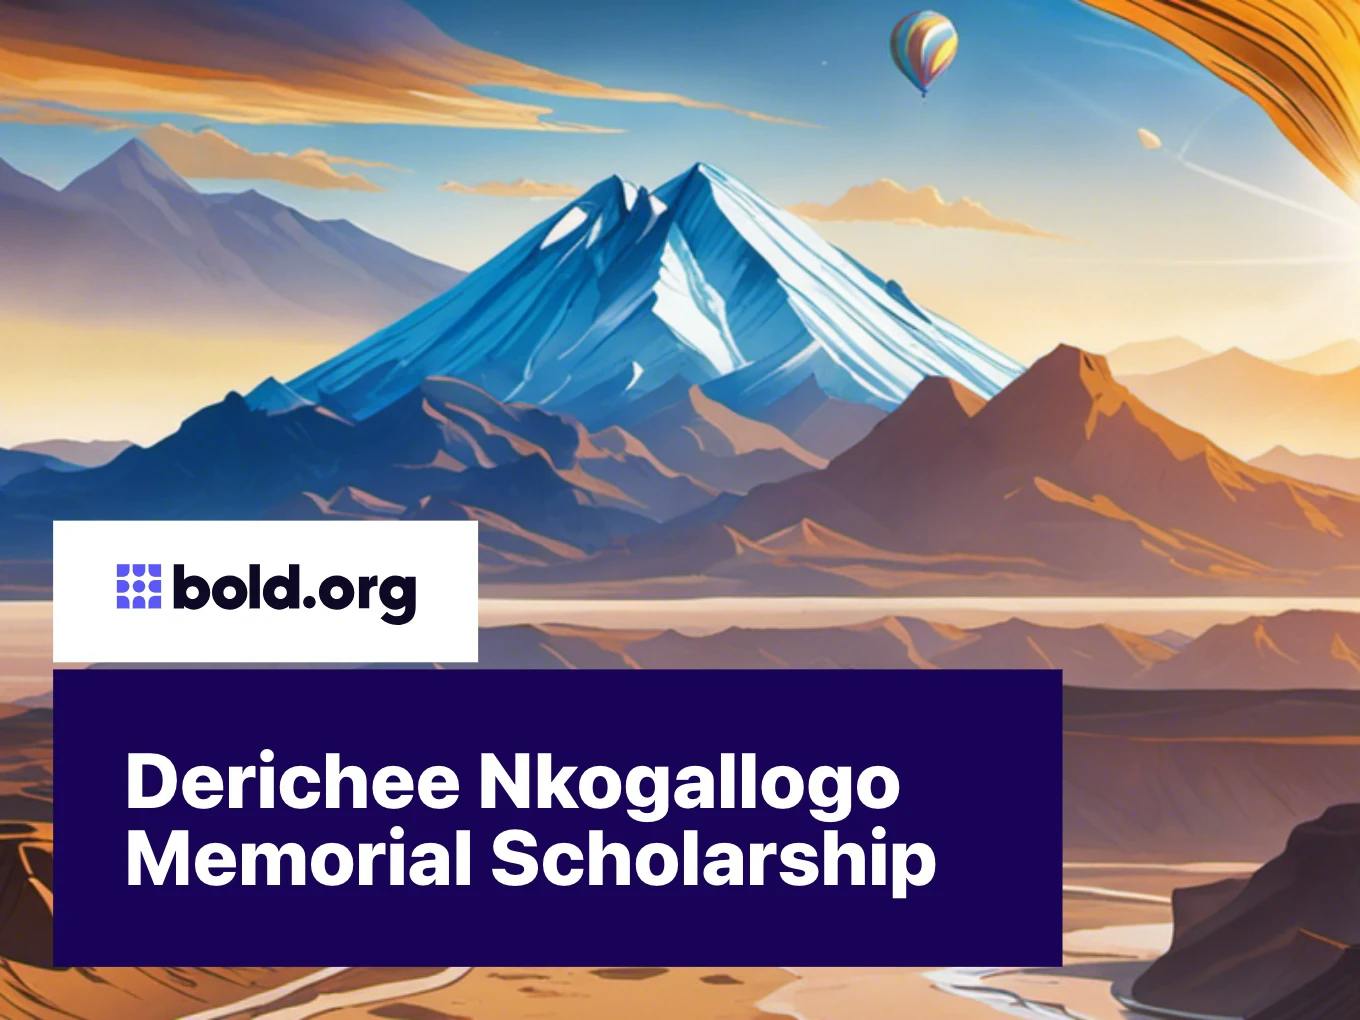 Derichee Nkogallogo Memorial Scholarship